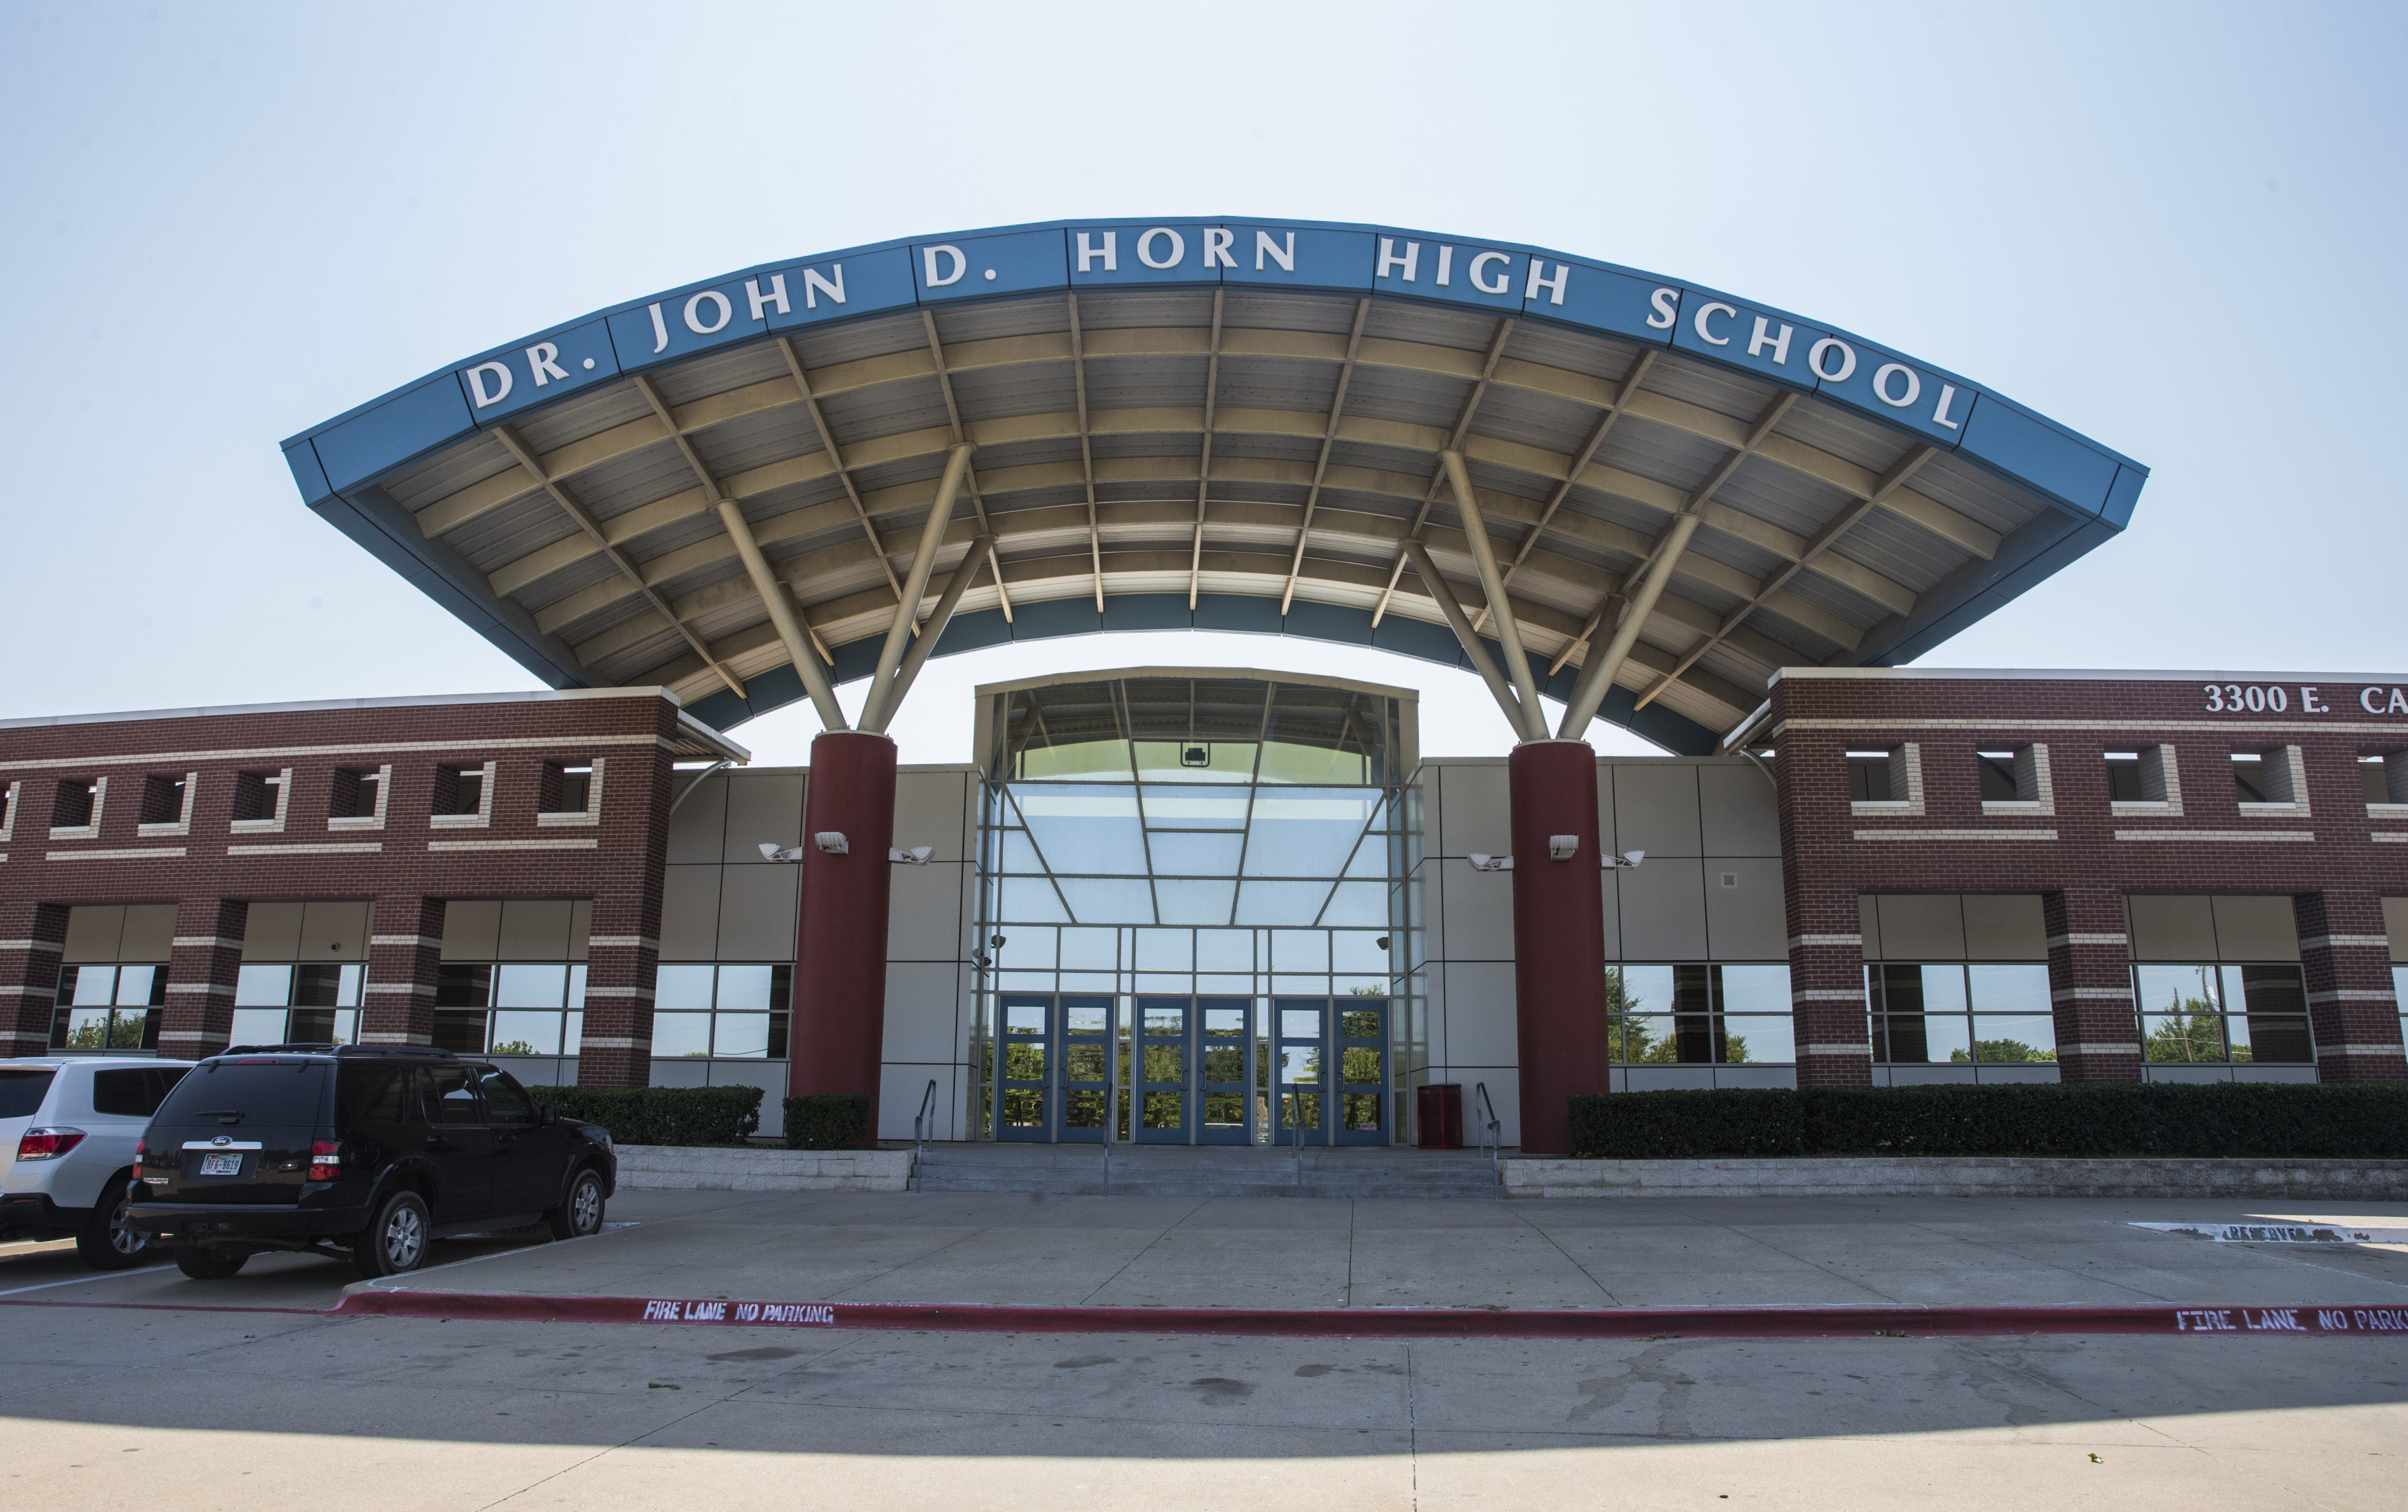 The front entrance of John Horn High School on Thursday, September 14, 2017 in Mesquite, Texas.